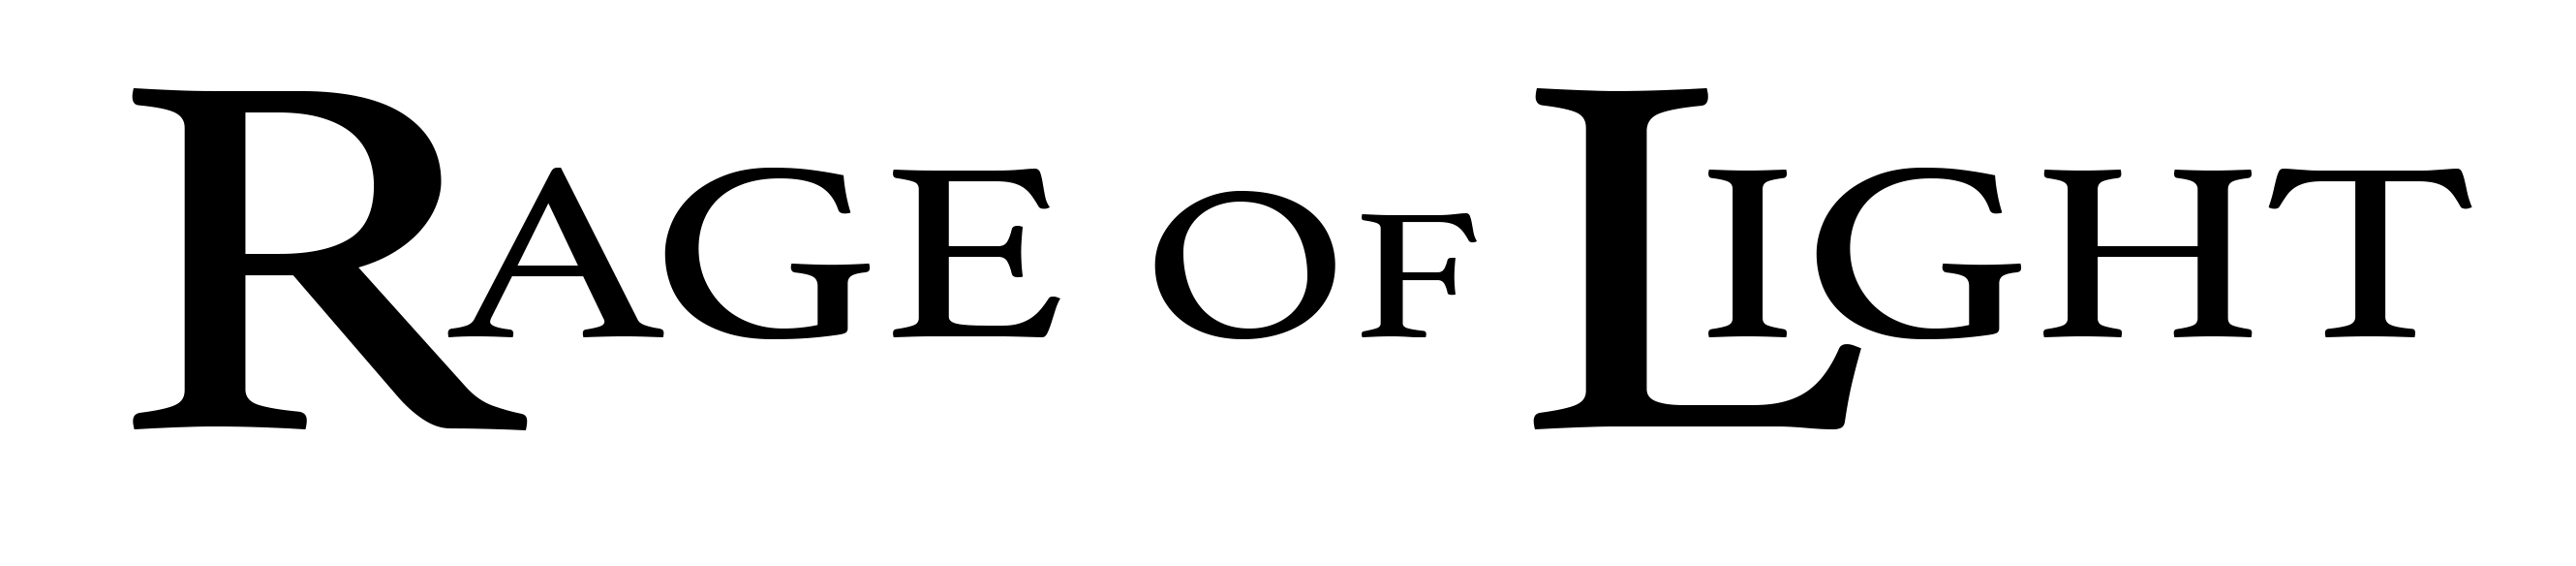 Band logo Rage Of Light  - black font-colour - transparent background